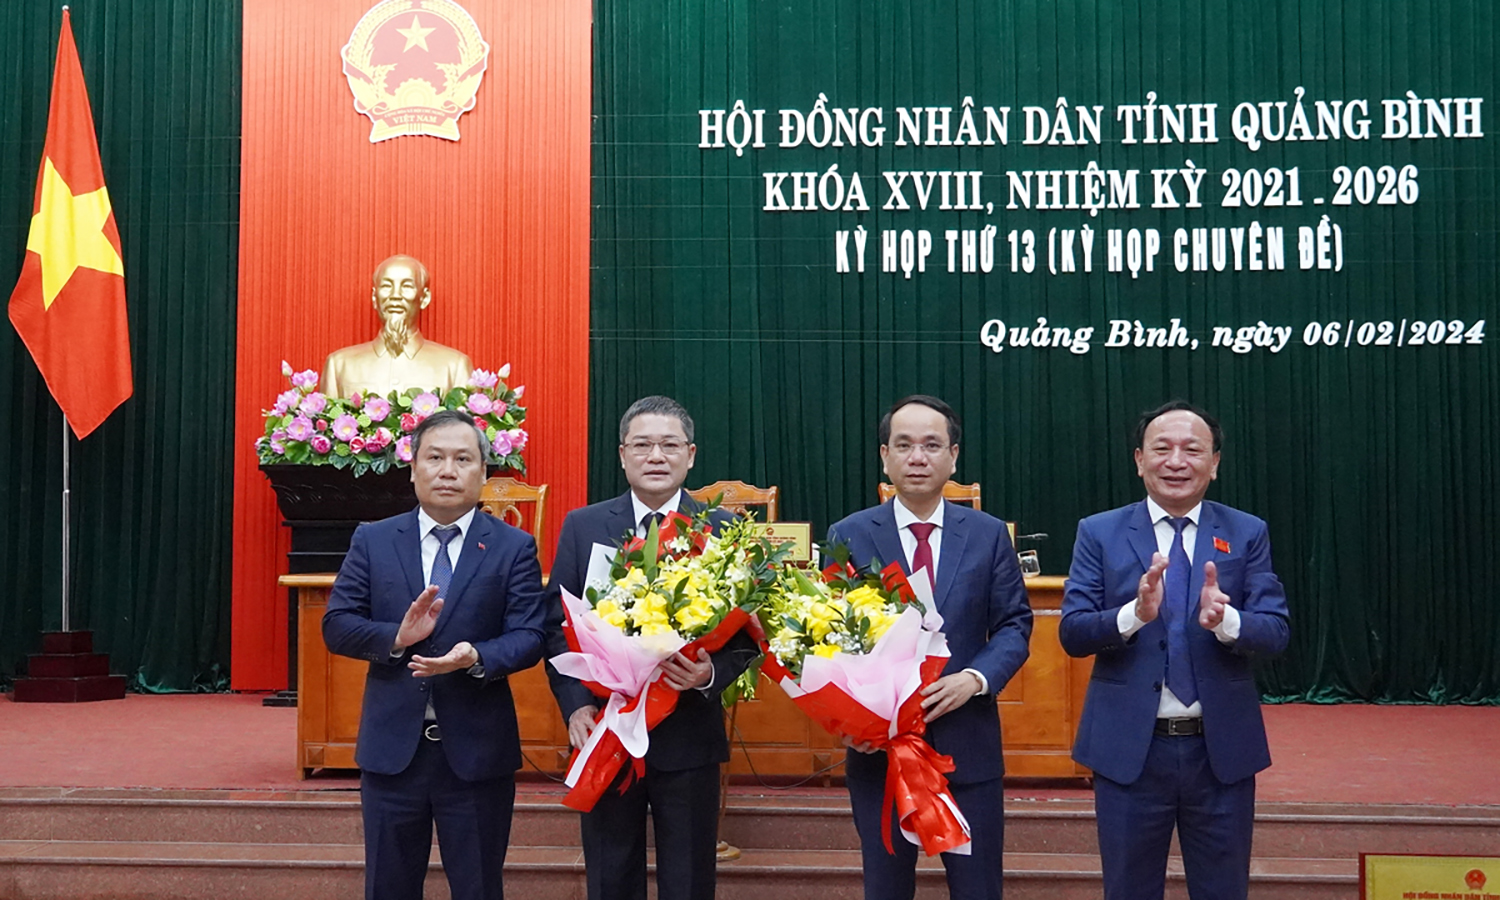 Thủ tướng phê chuẩn kết quả bầu chức vụ Phó Chủ tịch UBND tỉnh Quảng Bình